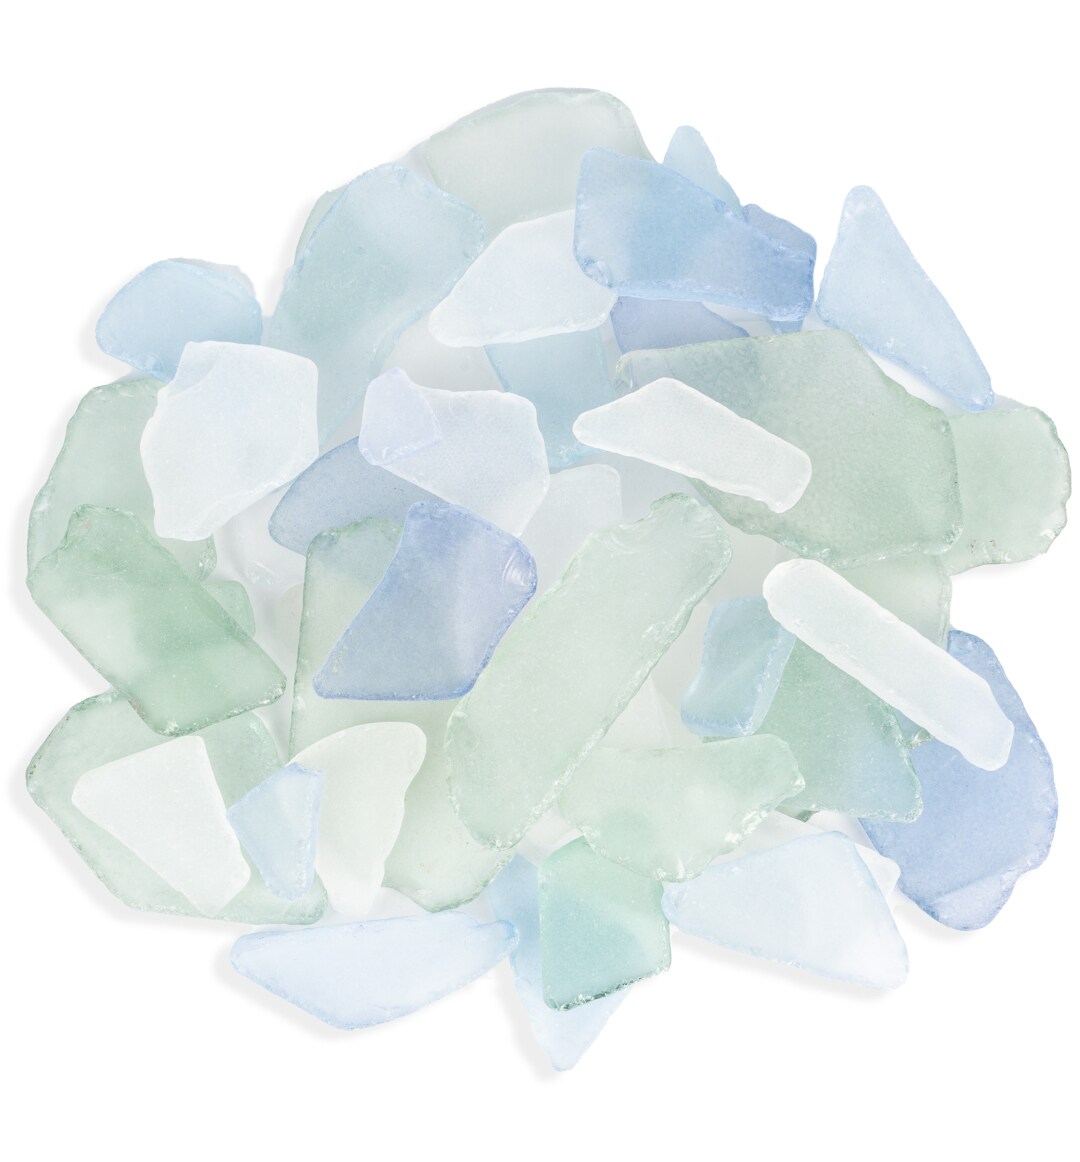 Sea Glass 11 Ounces Light Blue, Green &#x26; White Mix Sea Glass - Bulk Seaglass Pieces for Beach Decor &#x26; Crafts